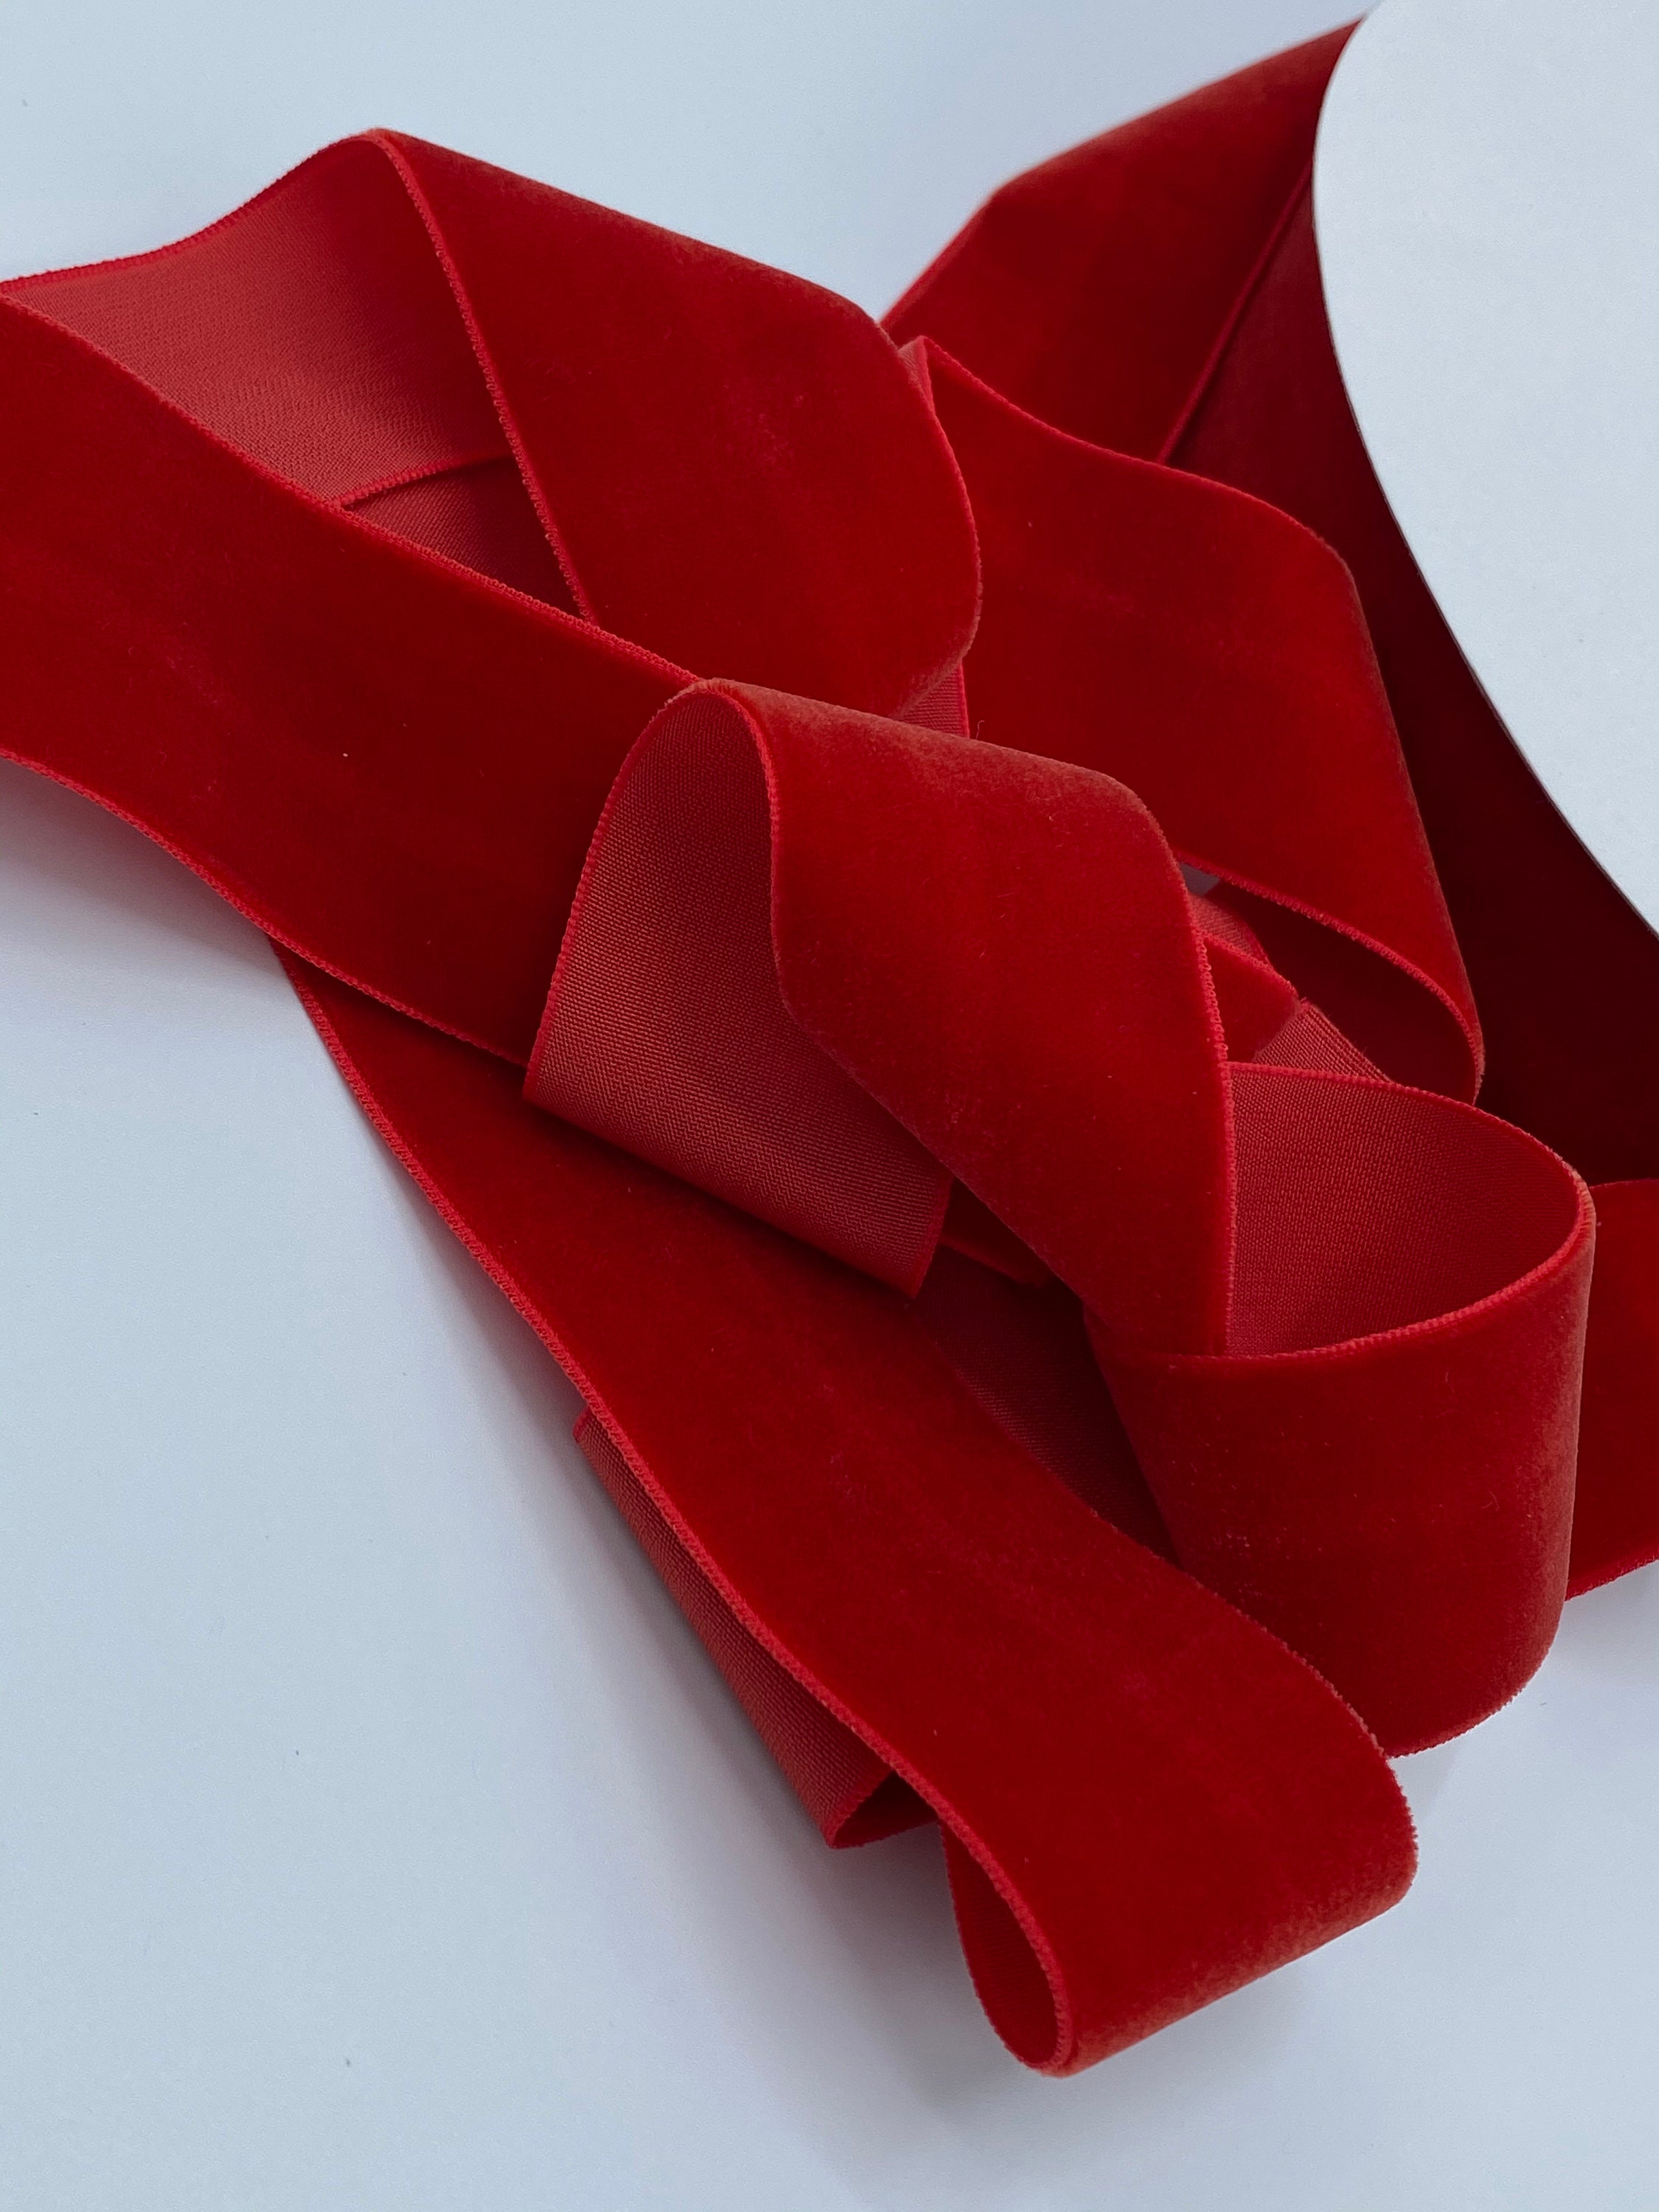 Viviana Velvet Ribbon, Red Velvet, 2, 1.5, 7/8, 5/8, 3/8, Christmas Ribbon,  Gift Wrapping Ribbon 